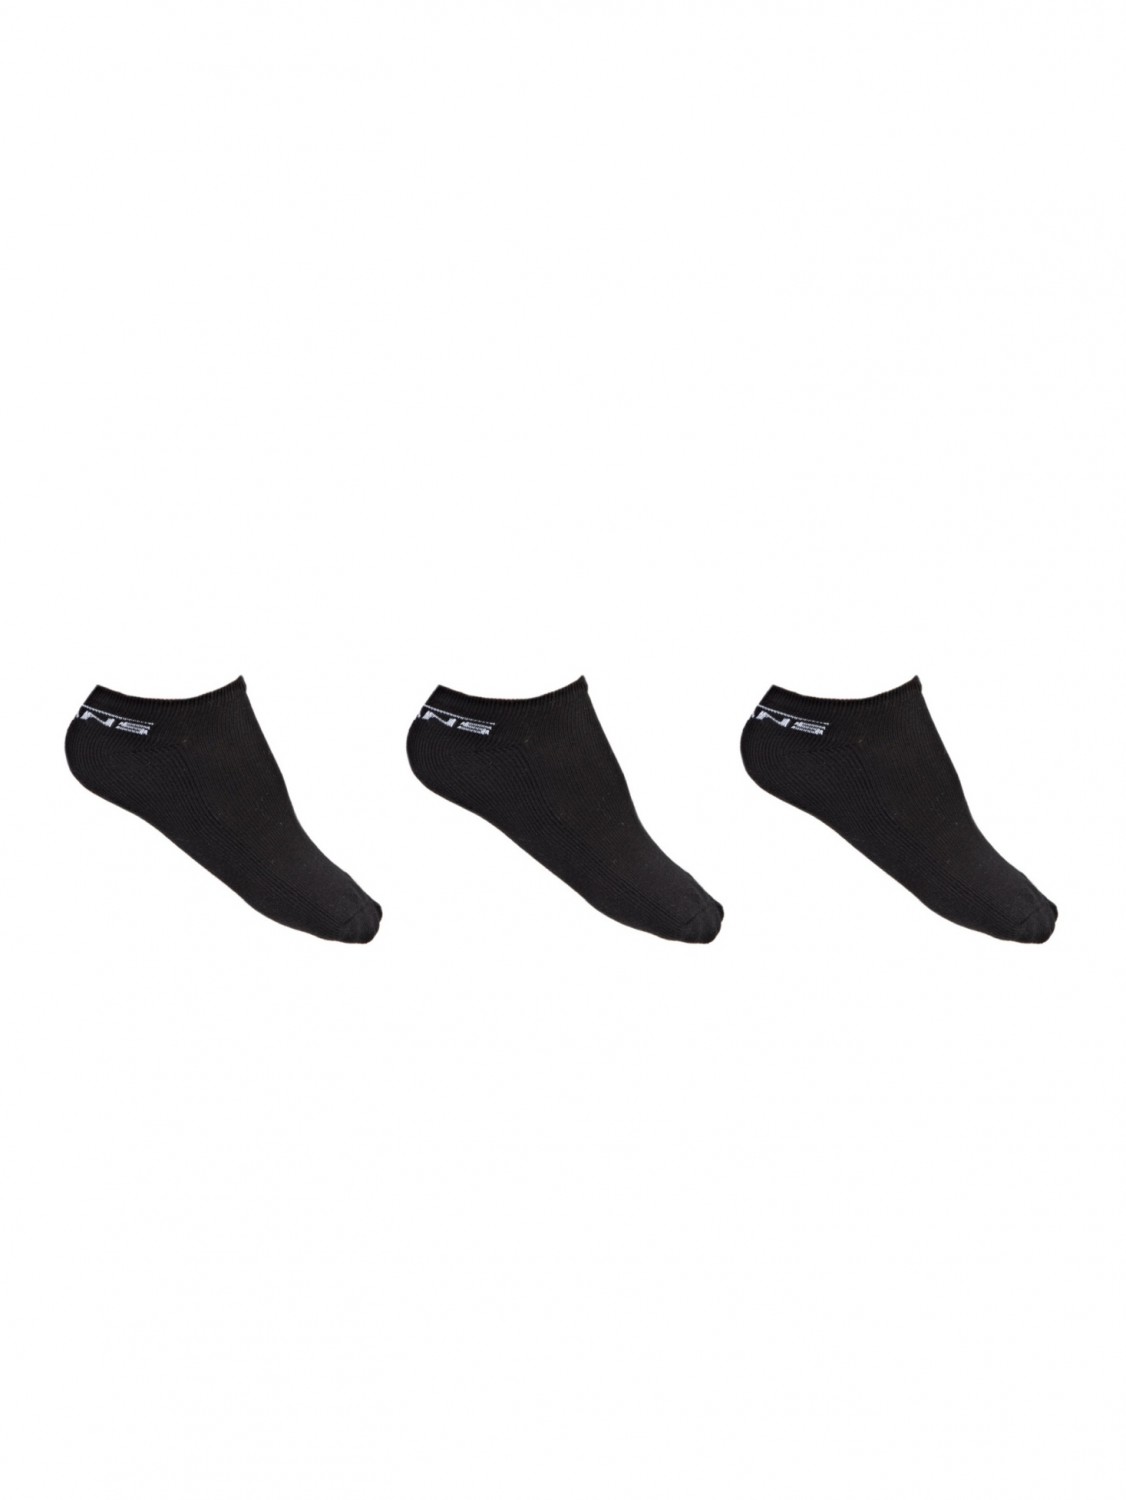 Vans CLASSIC LOW 3PK black kotníkové ponožky - 7-9 černá